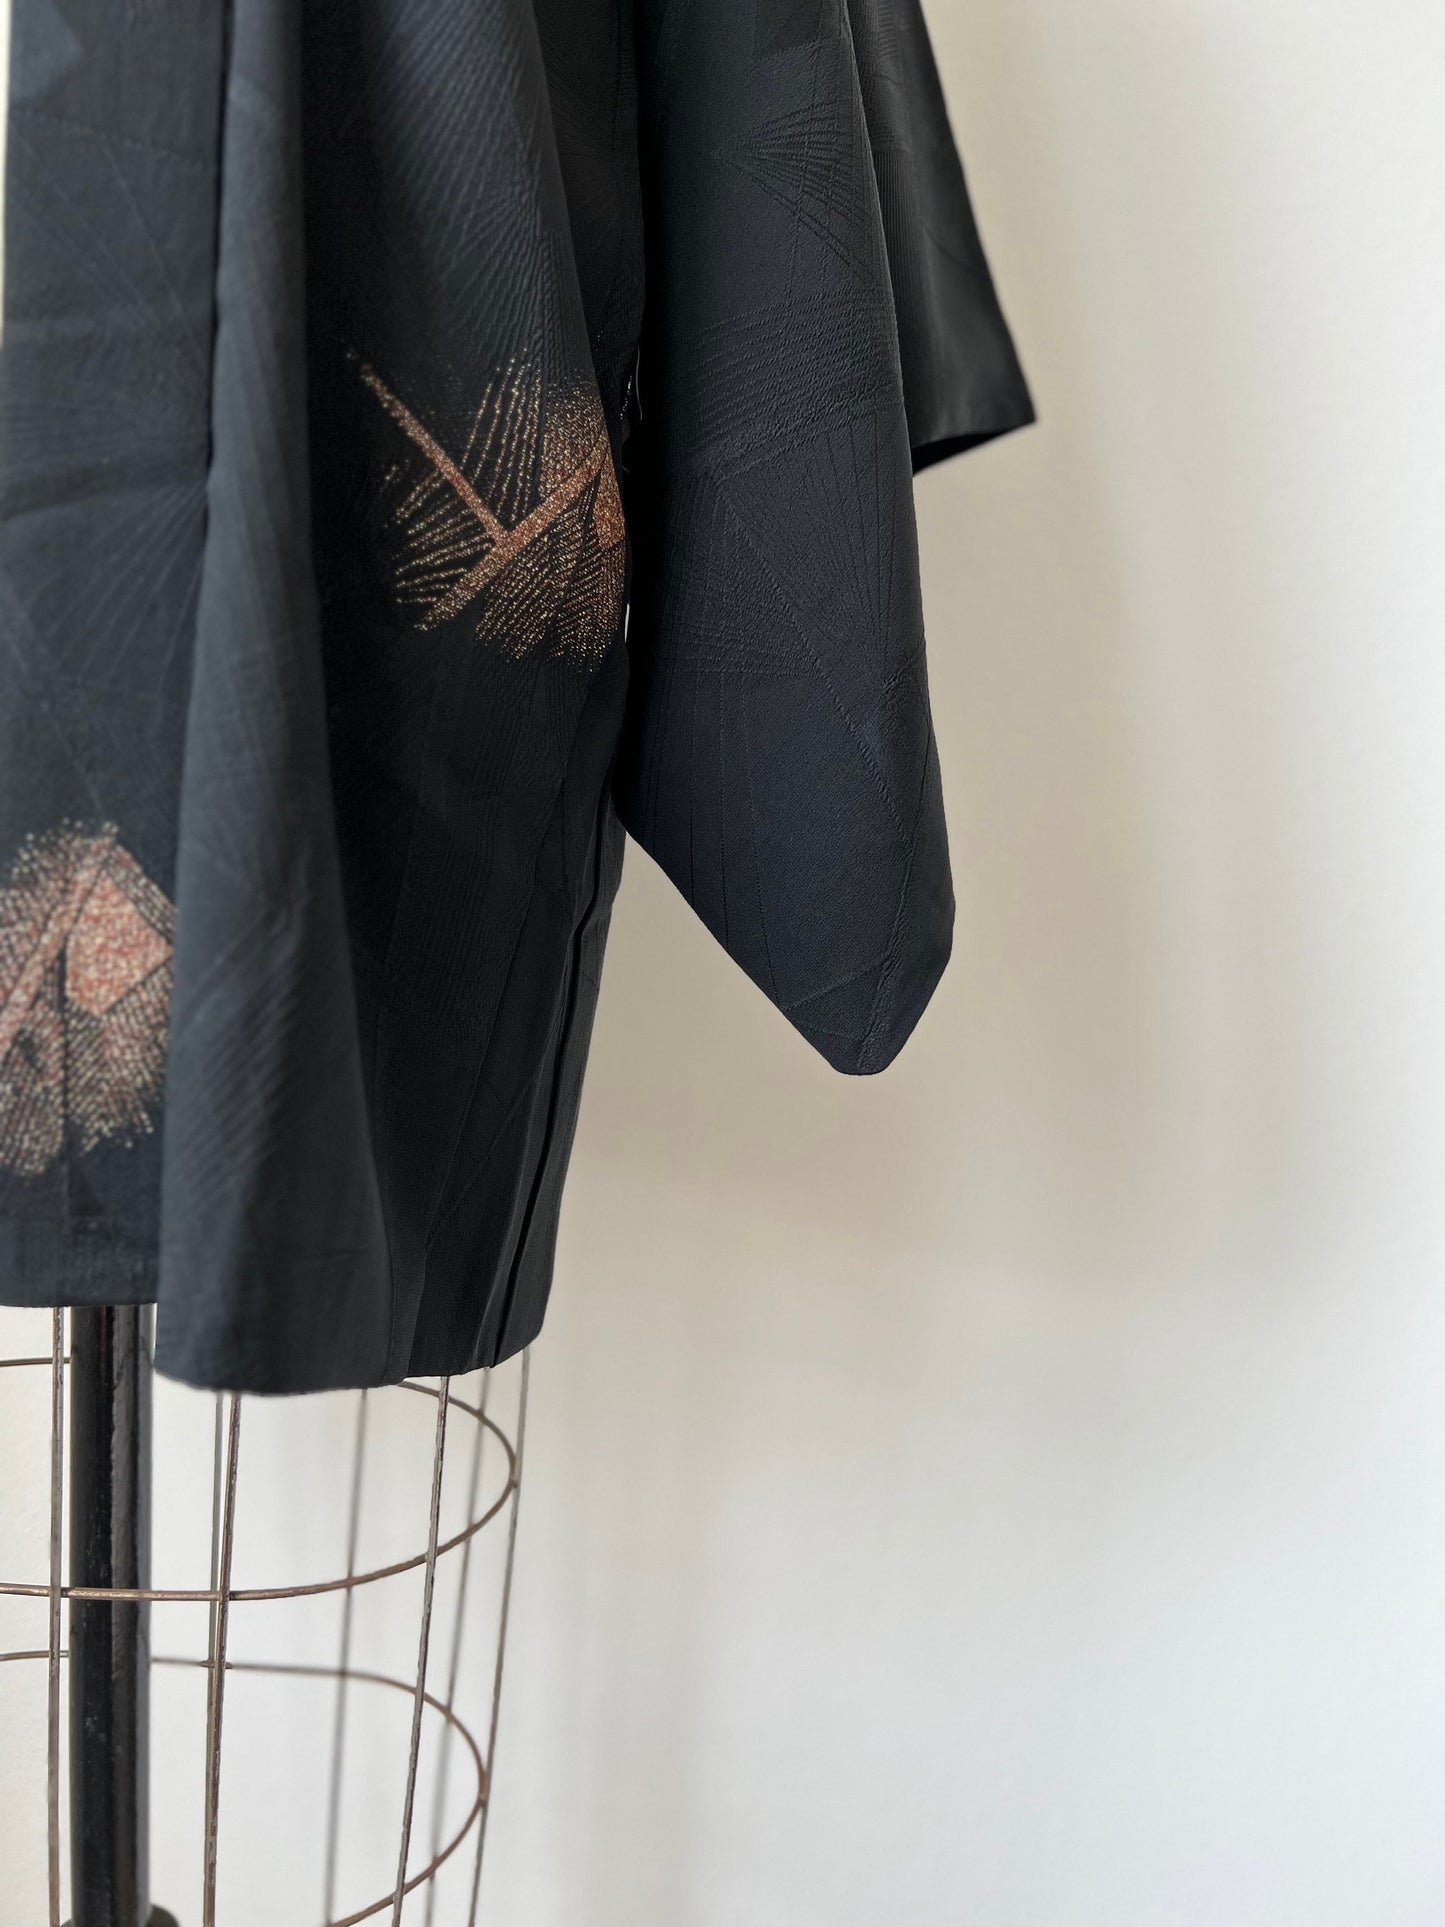 Front image, antique Japanese black kimono jacket